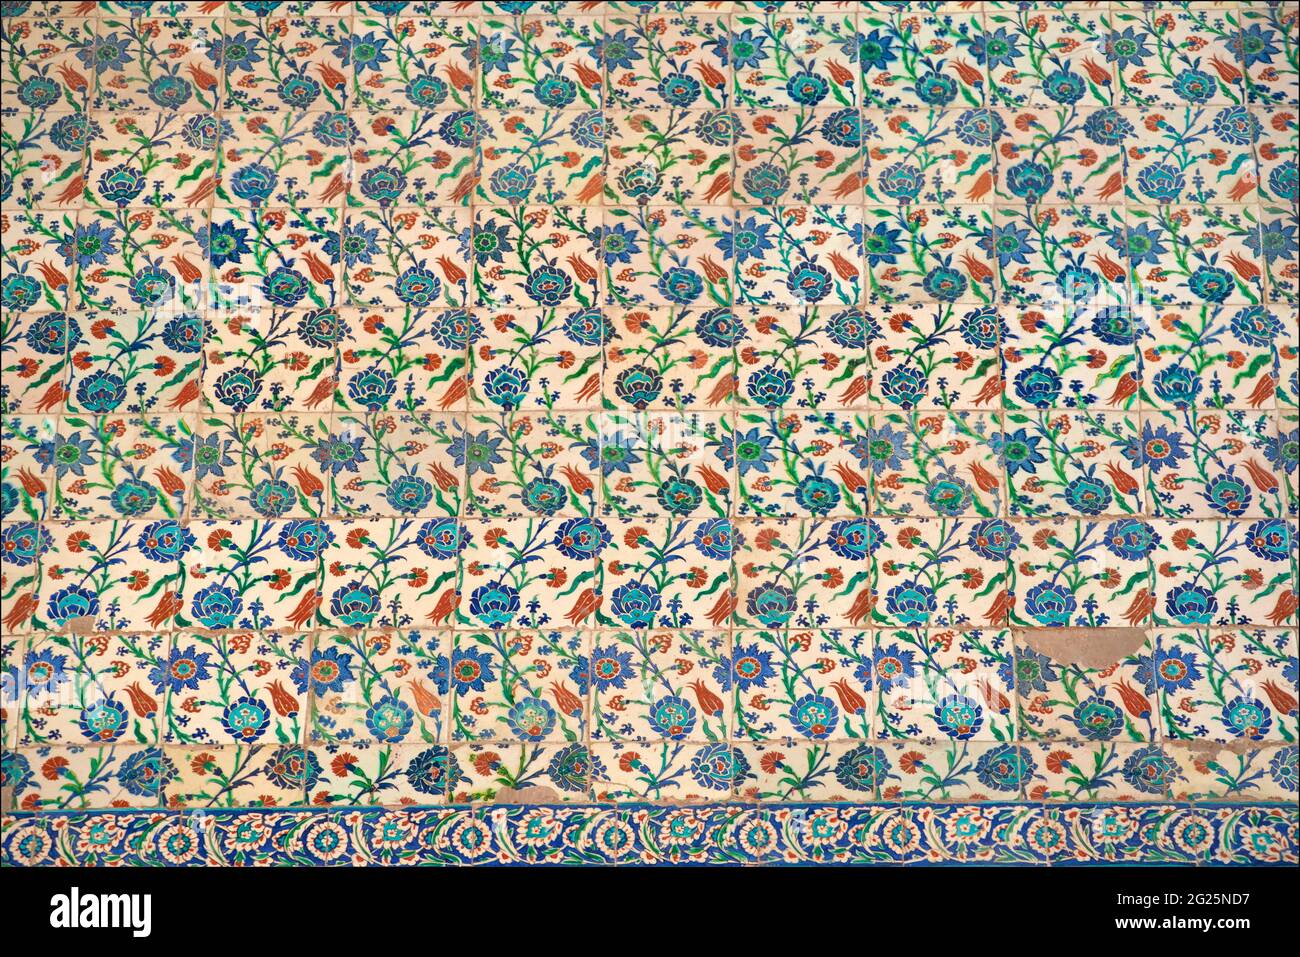 Znik-Fliesen schmücken das Innere der Sultan-Ahmed-Moschee (türkisch: Sultan Ahmet Camii), auch bekannt als die Blaue Moschee. Eine Freitagsmoschee aus osmanischer Zeit in Istanbul, Türkei. Stockfoto